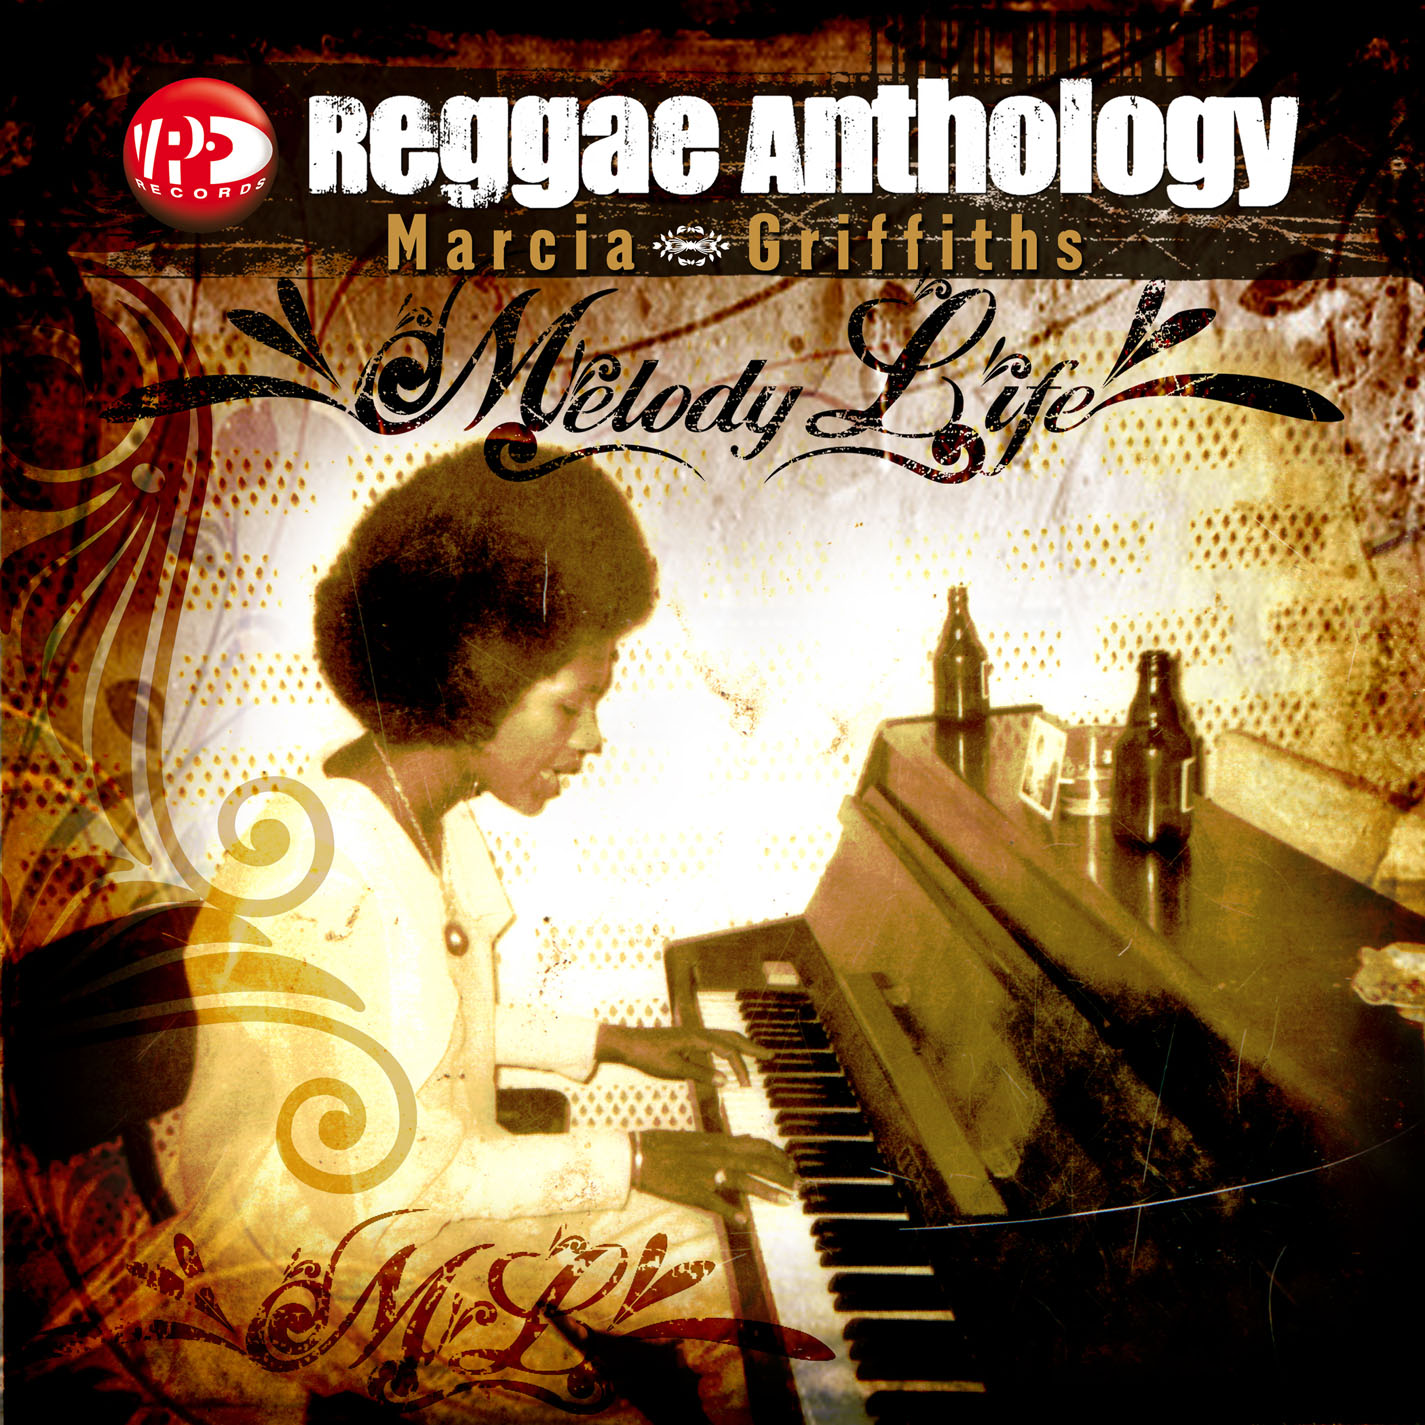 Resultado de imagem para Marcia Griffiths - Reggae Anthology 2007